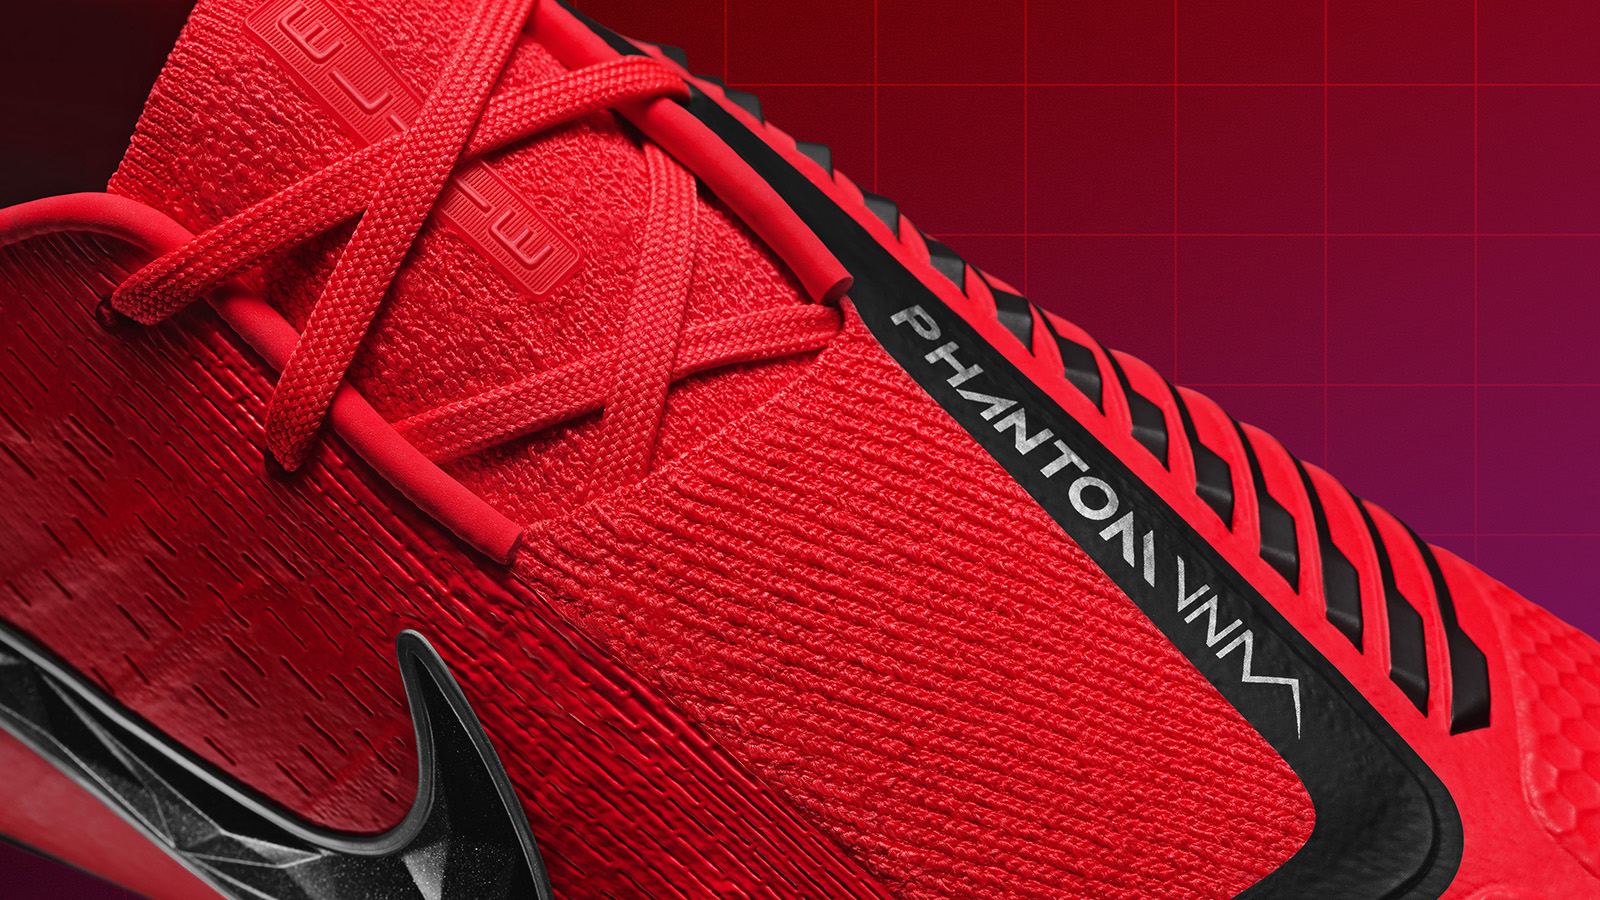 Botines Nike PhantomVNM